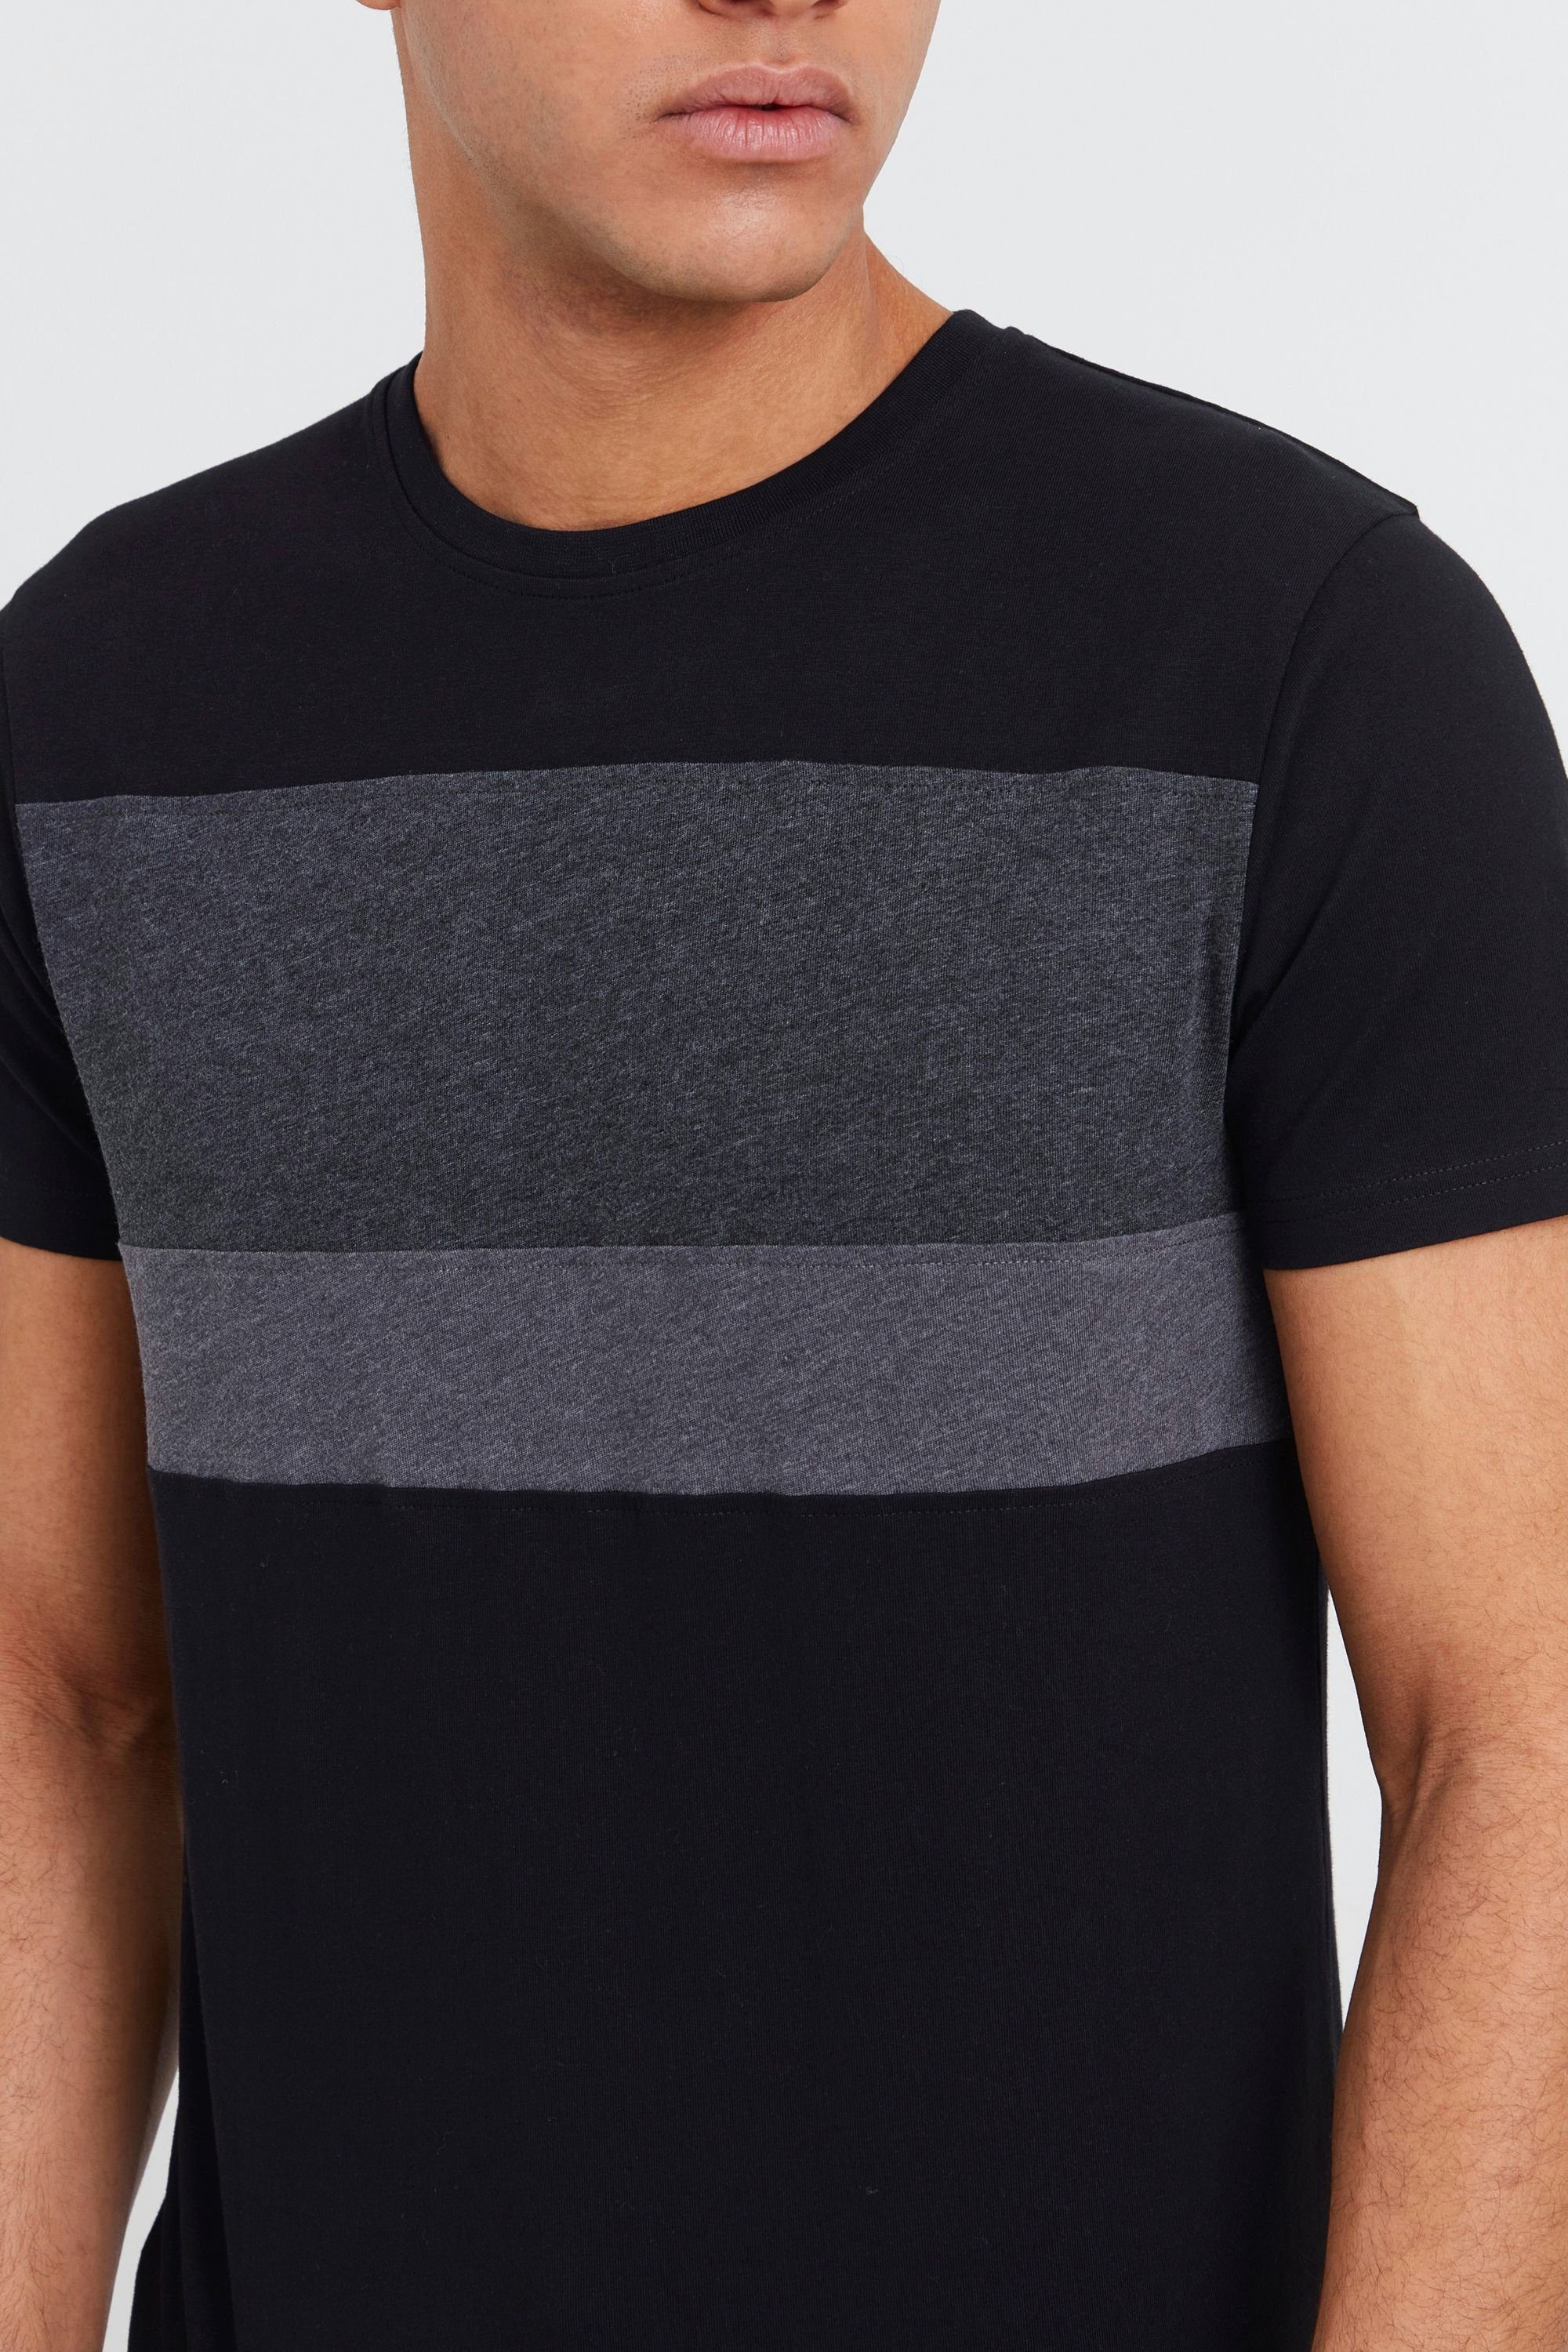 SDSascha Tricolor Streifenoptik Black T-Shirt !Solid in (9000) Rundhalsshirt